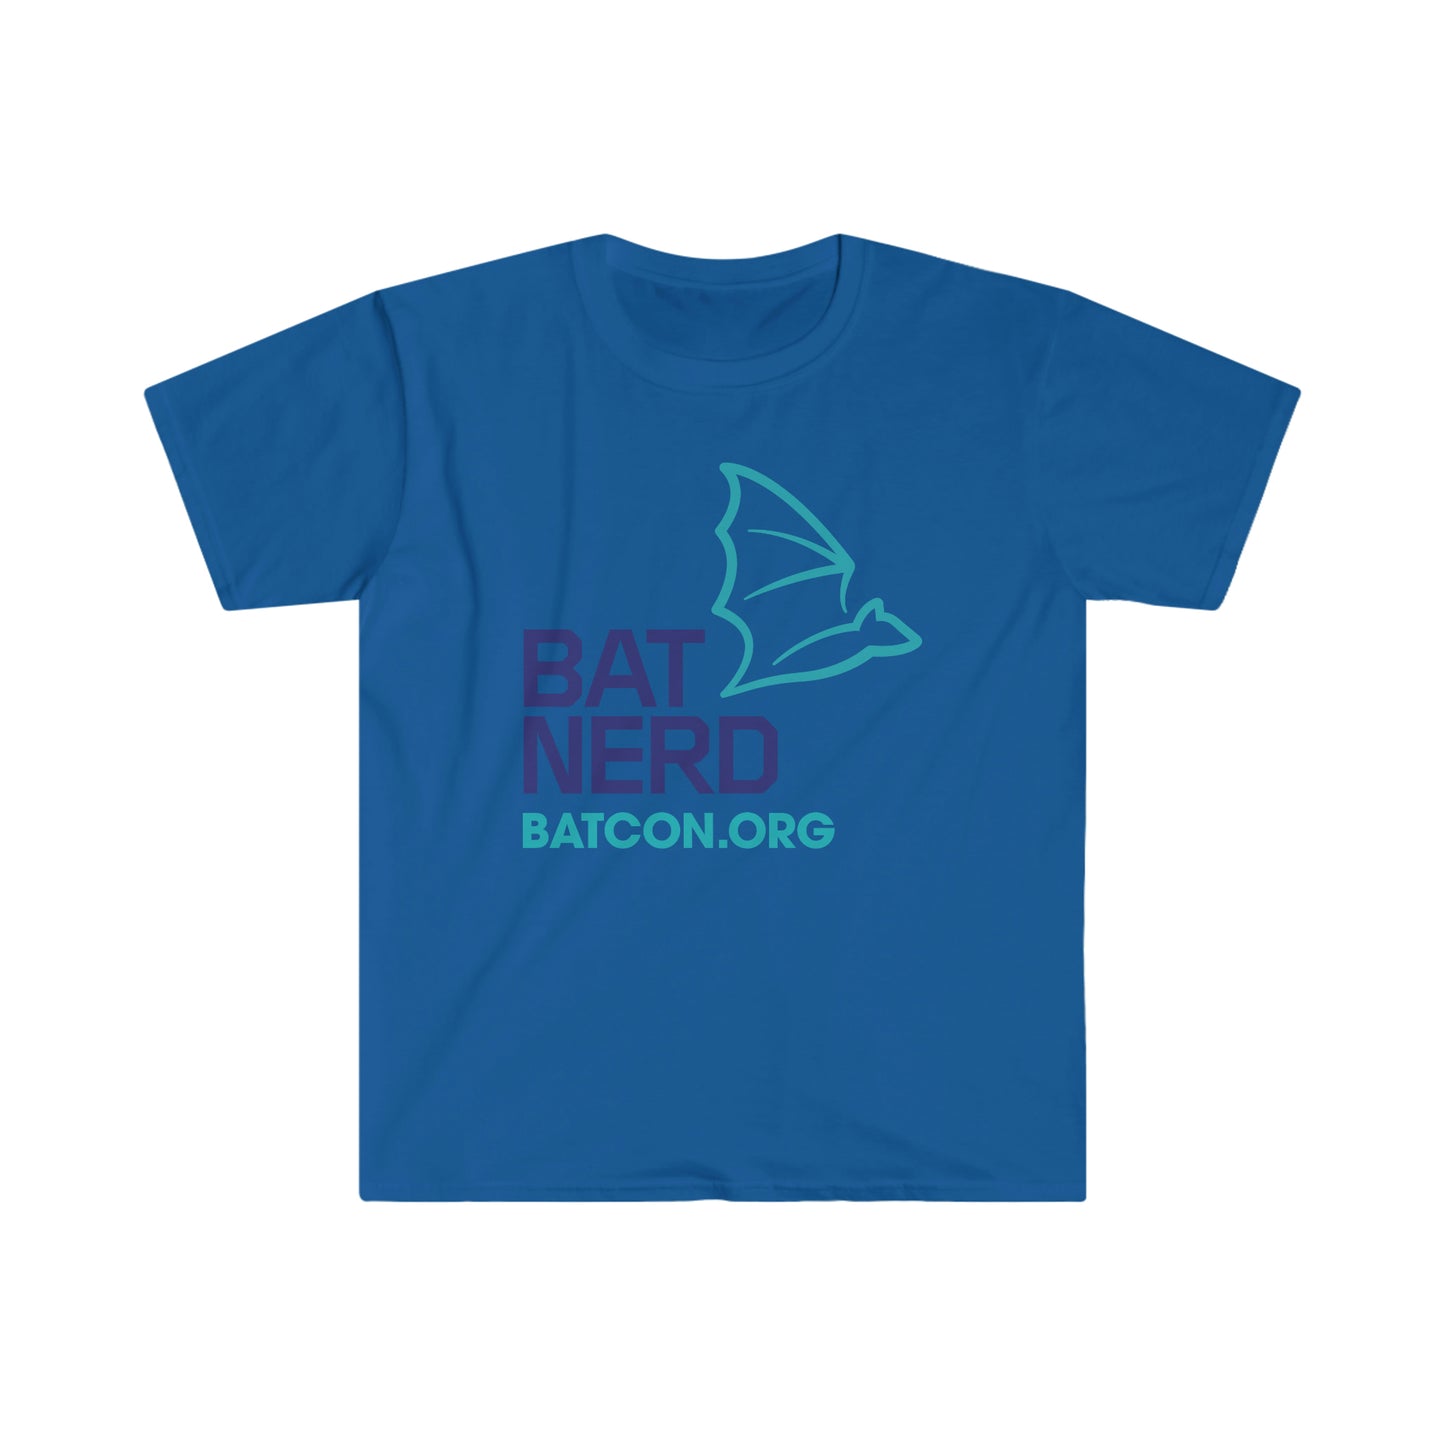 Bat Nerd - Camiseta unisex de estilo suave